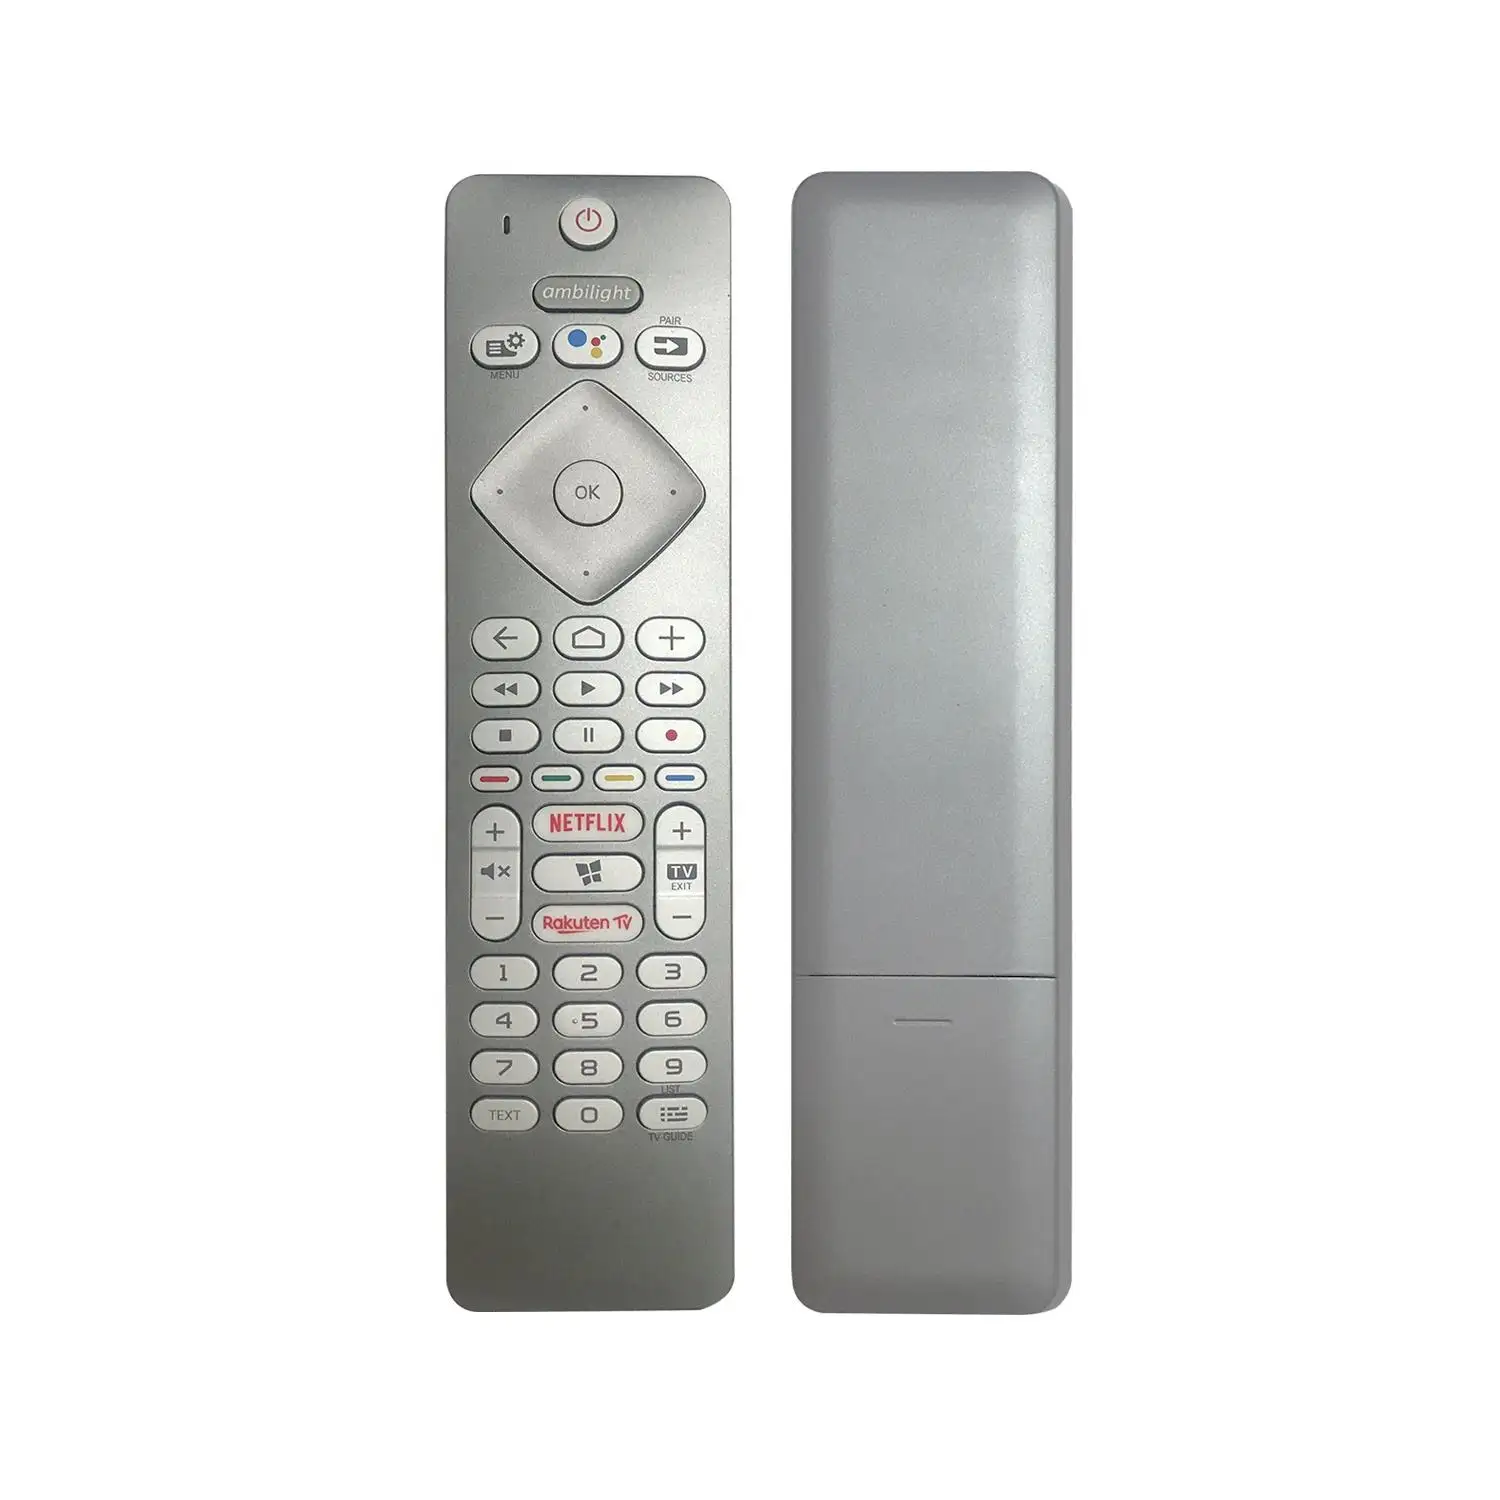 Zy PH-V1 RC4154403-01R Stem Afstandsbediening Voor Philips Smart Tv Met Netflix Rakuten Tv-Functie